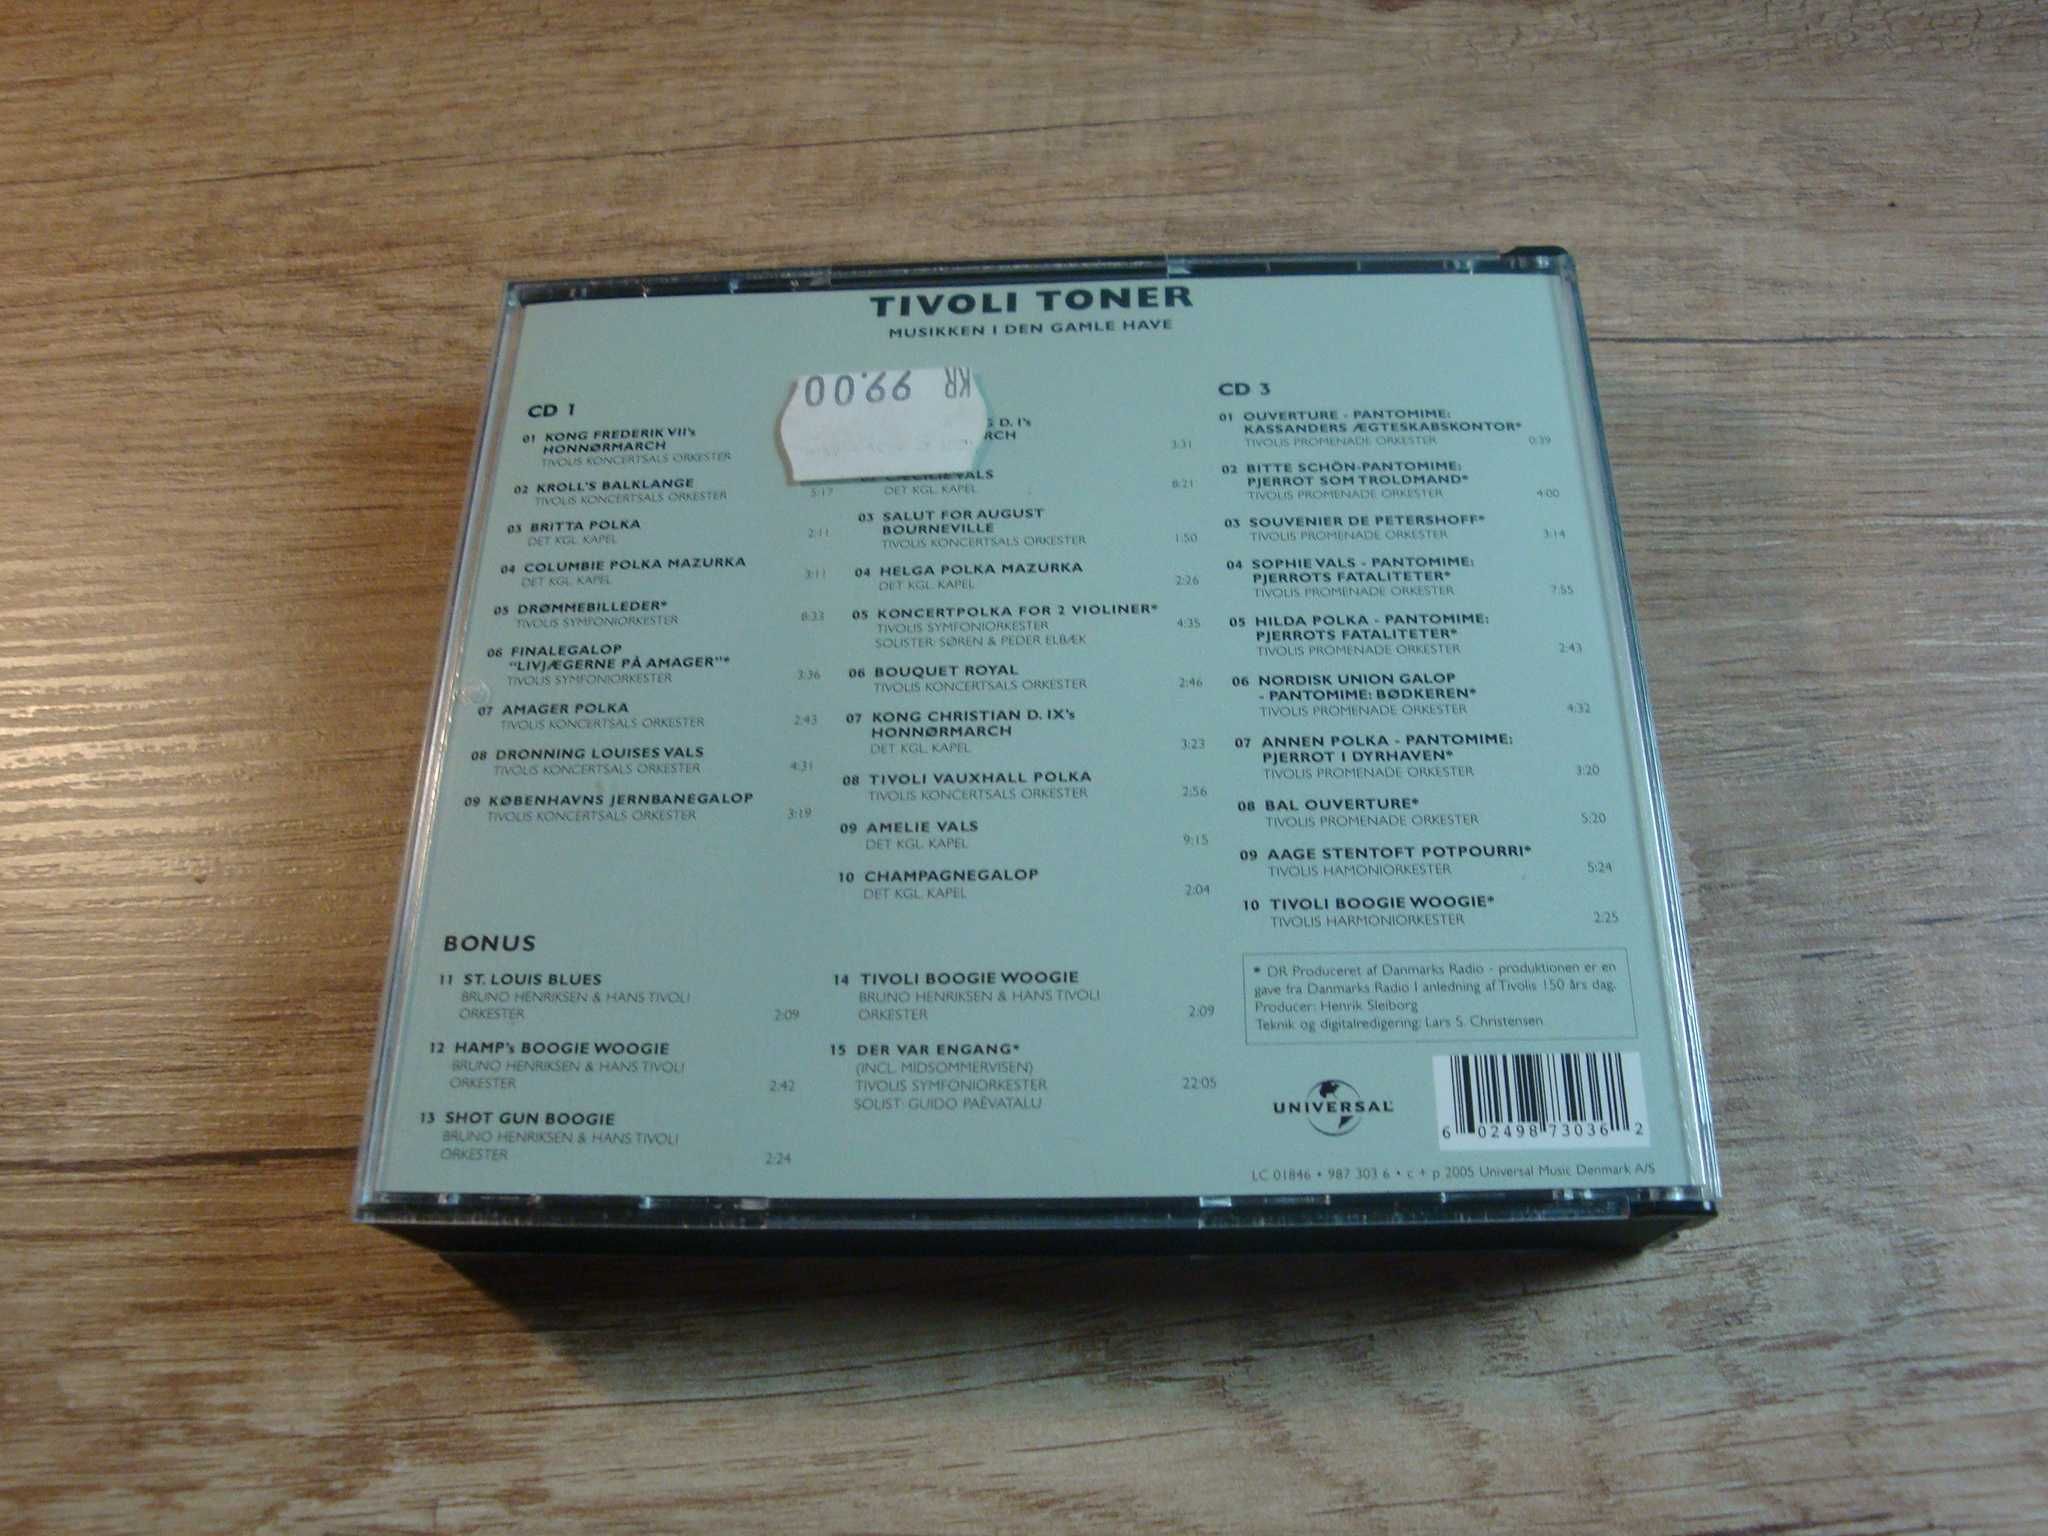 Tivoli Toner - Musikken I Den Gamle Have (Box 3CD)